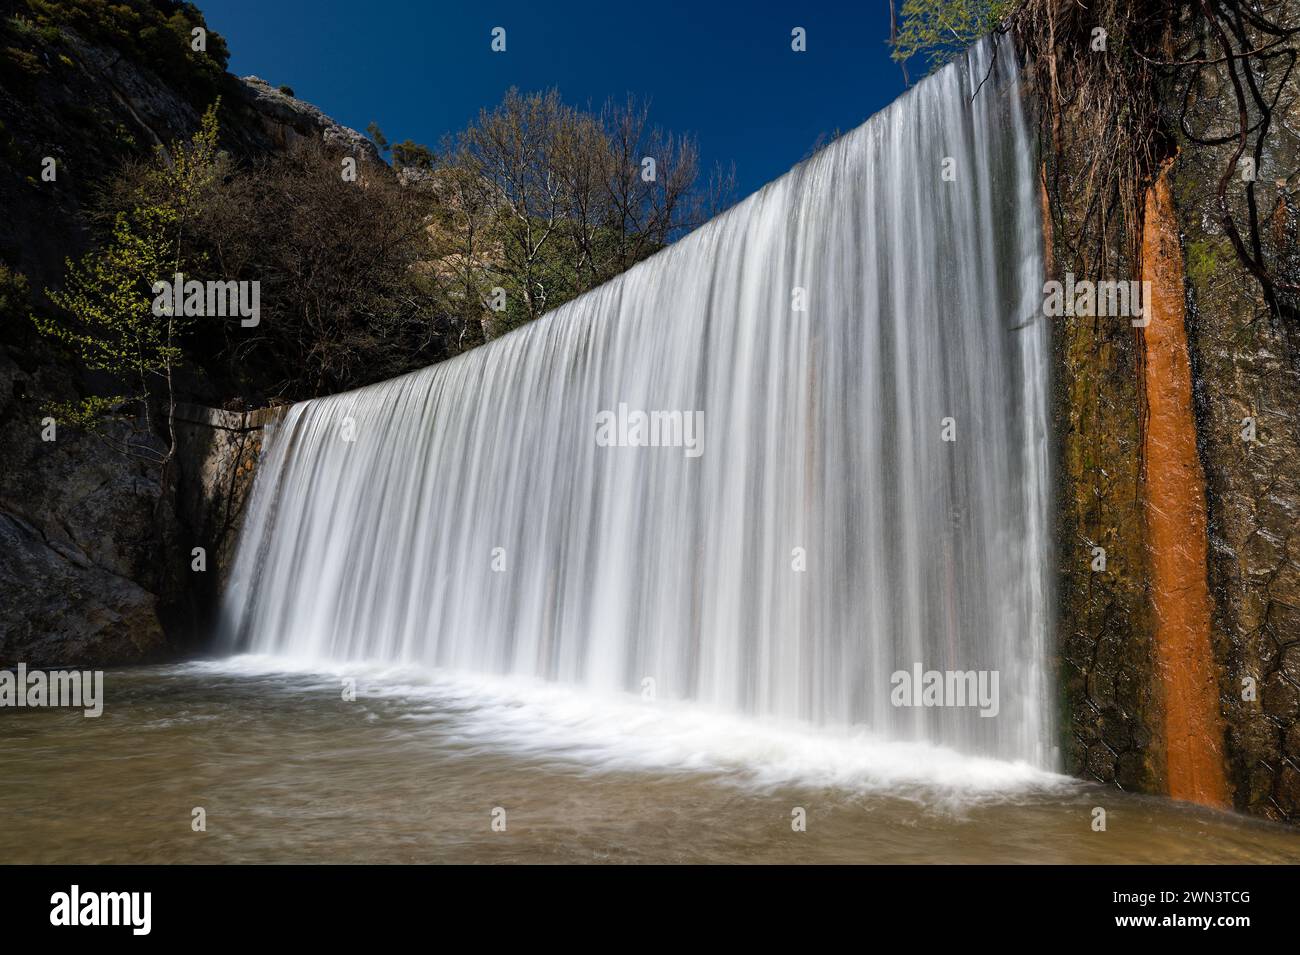 Vue de la cascade artificielle de Hot Waters ou Zesta Nera près de la ville de Sidirokastro en Macédoine, Grèce Banque D'Images